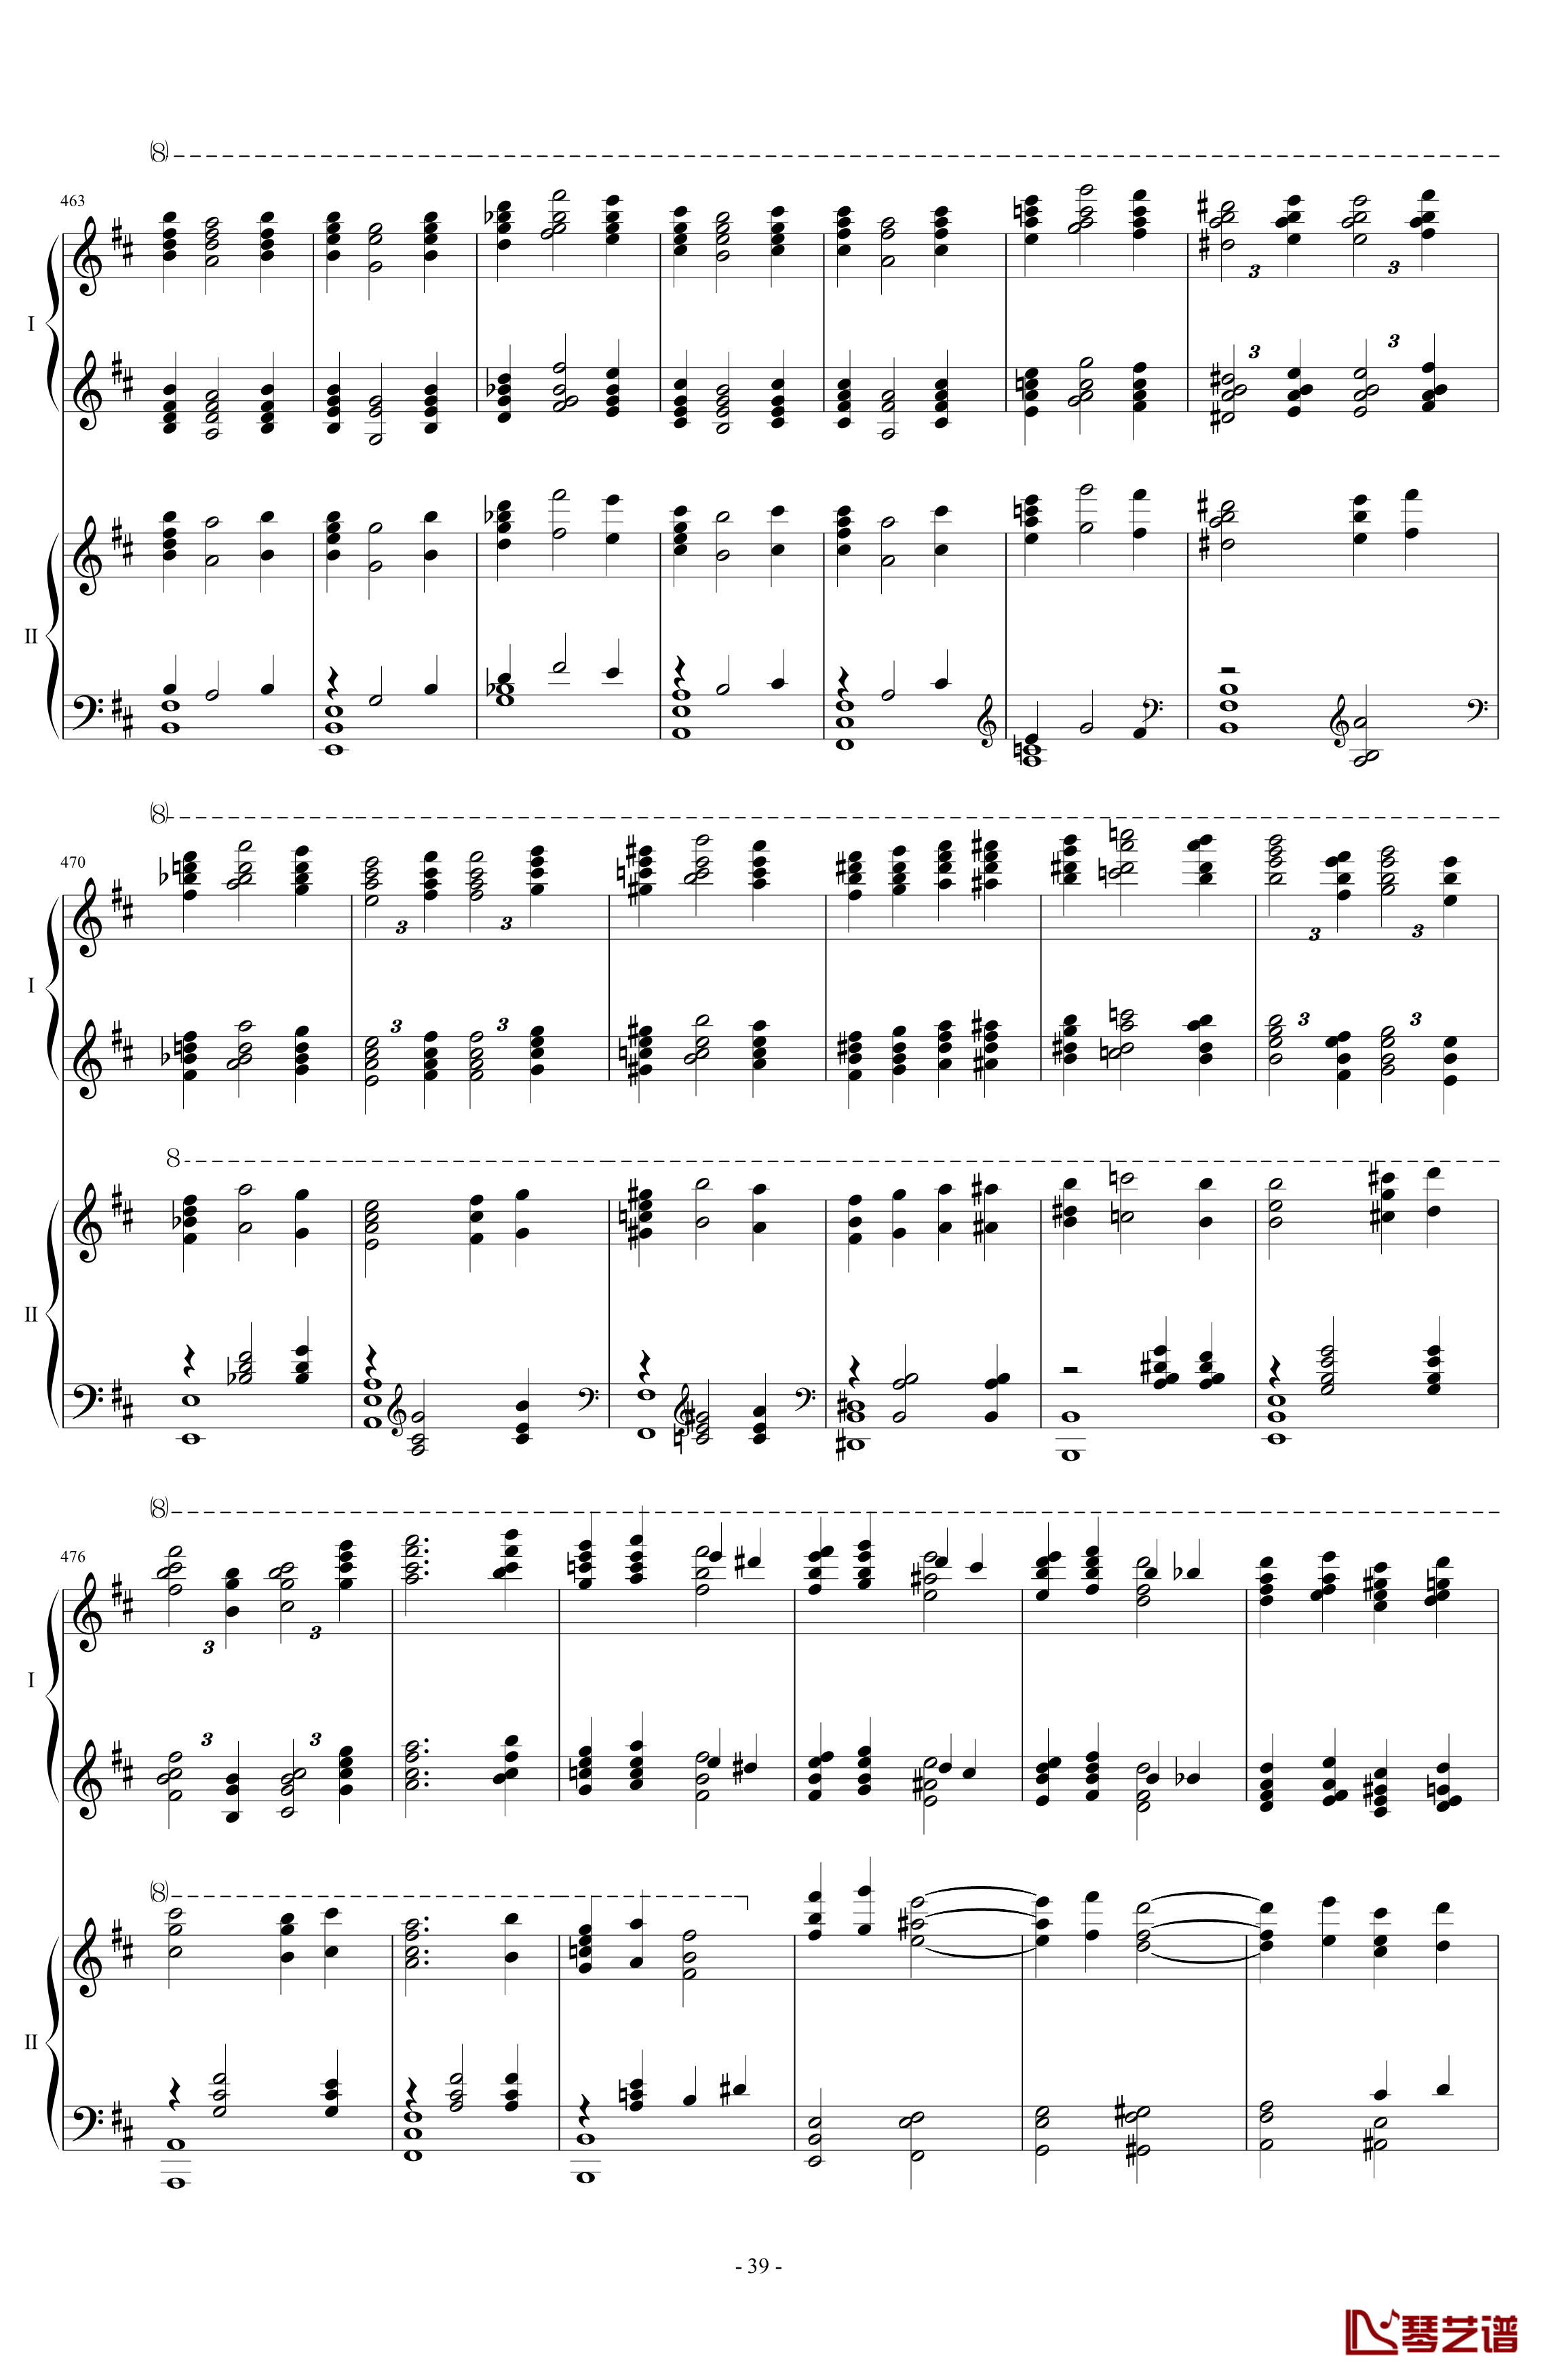 拉三第三乐章41页双钢琴钢琴谱-最难钢琴曲-拉赫马尼若夫39